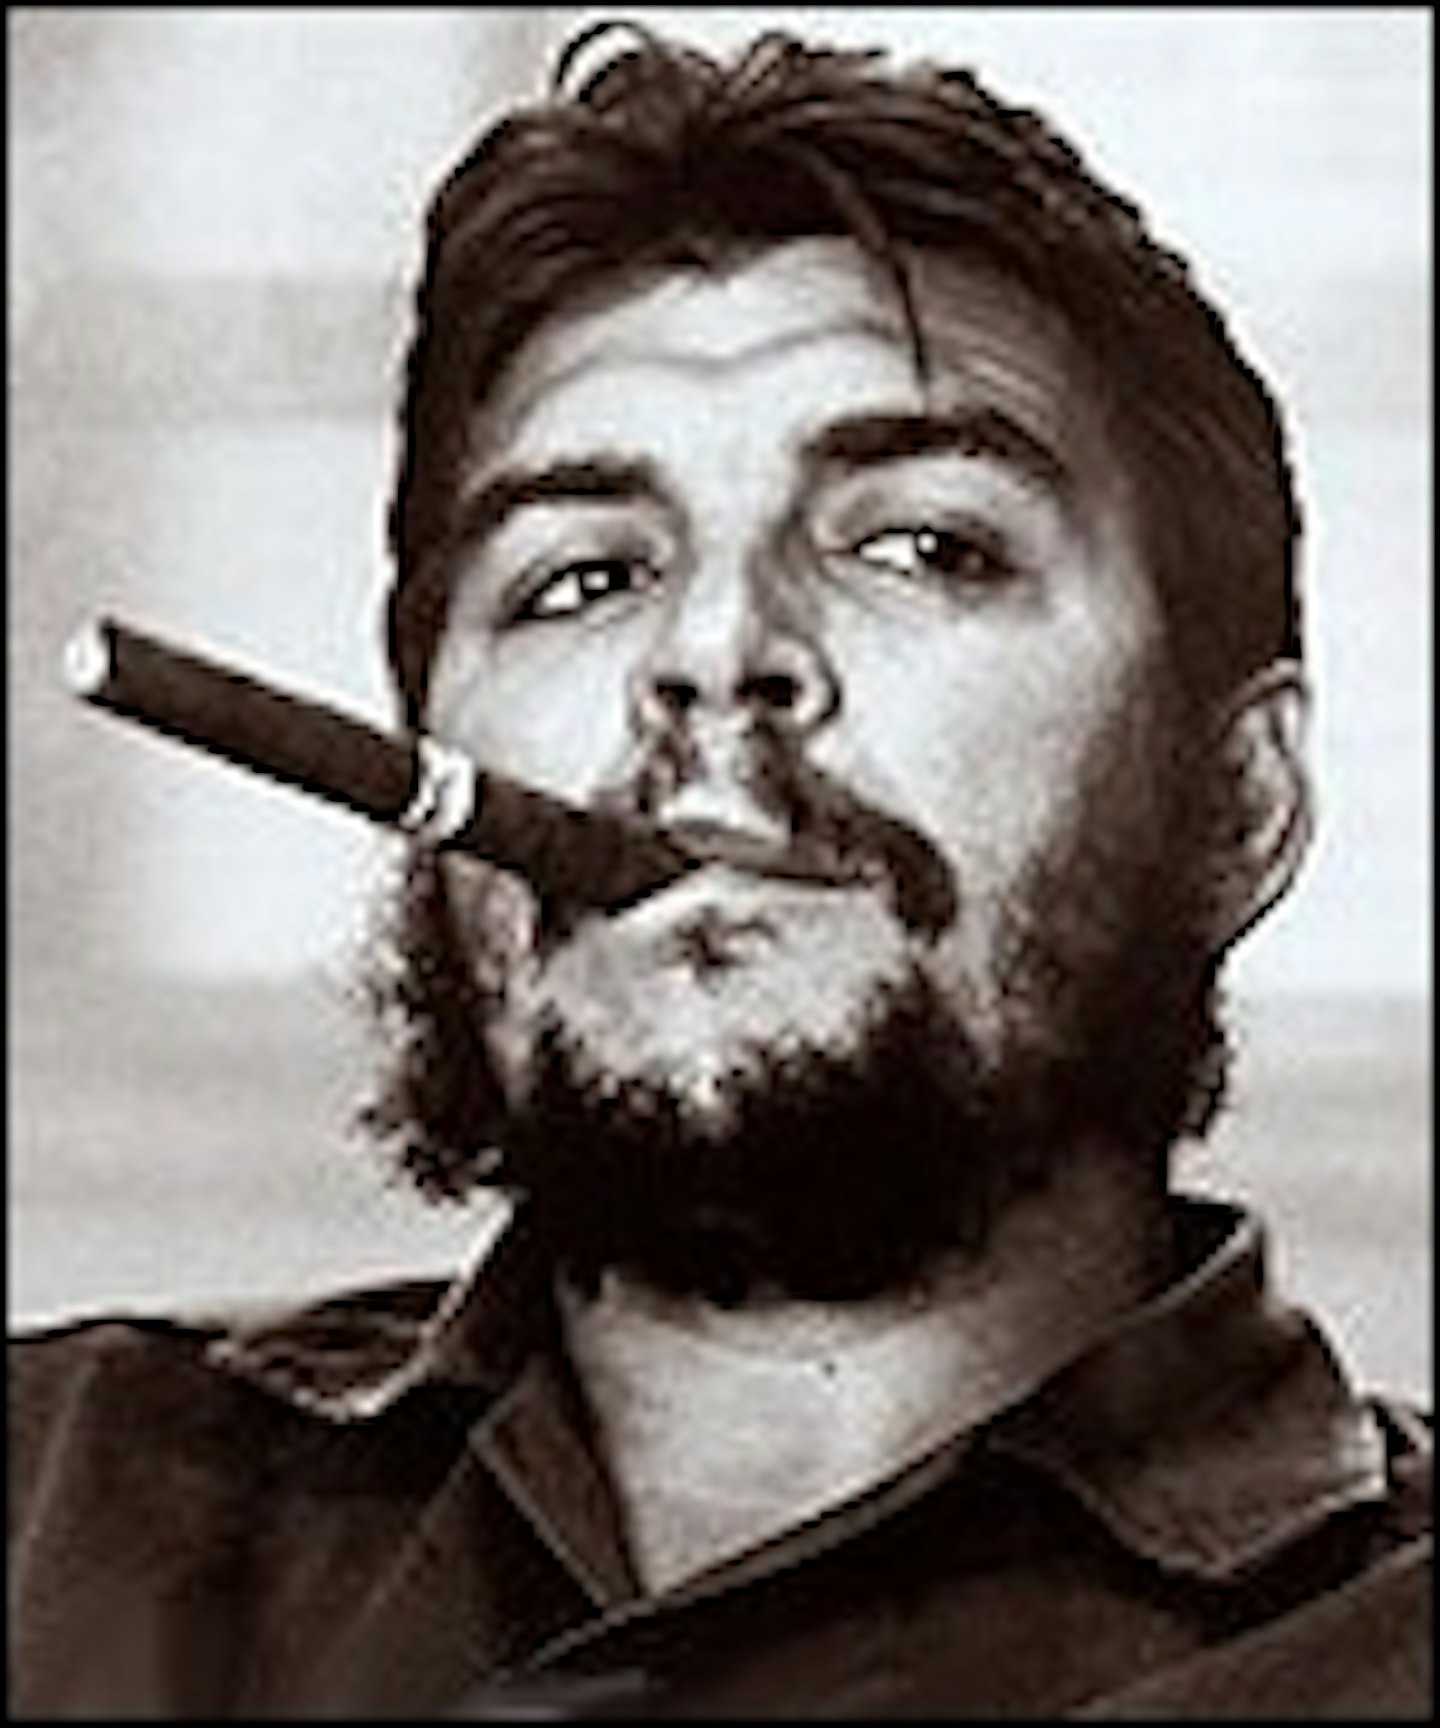 Soderbergh's Che Guevara Film Is On